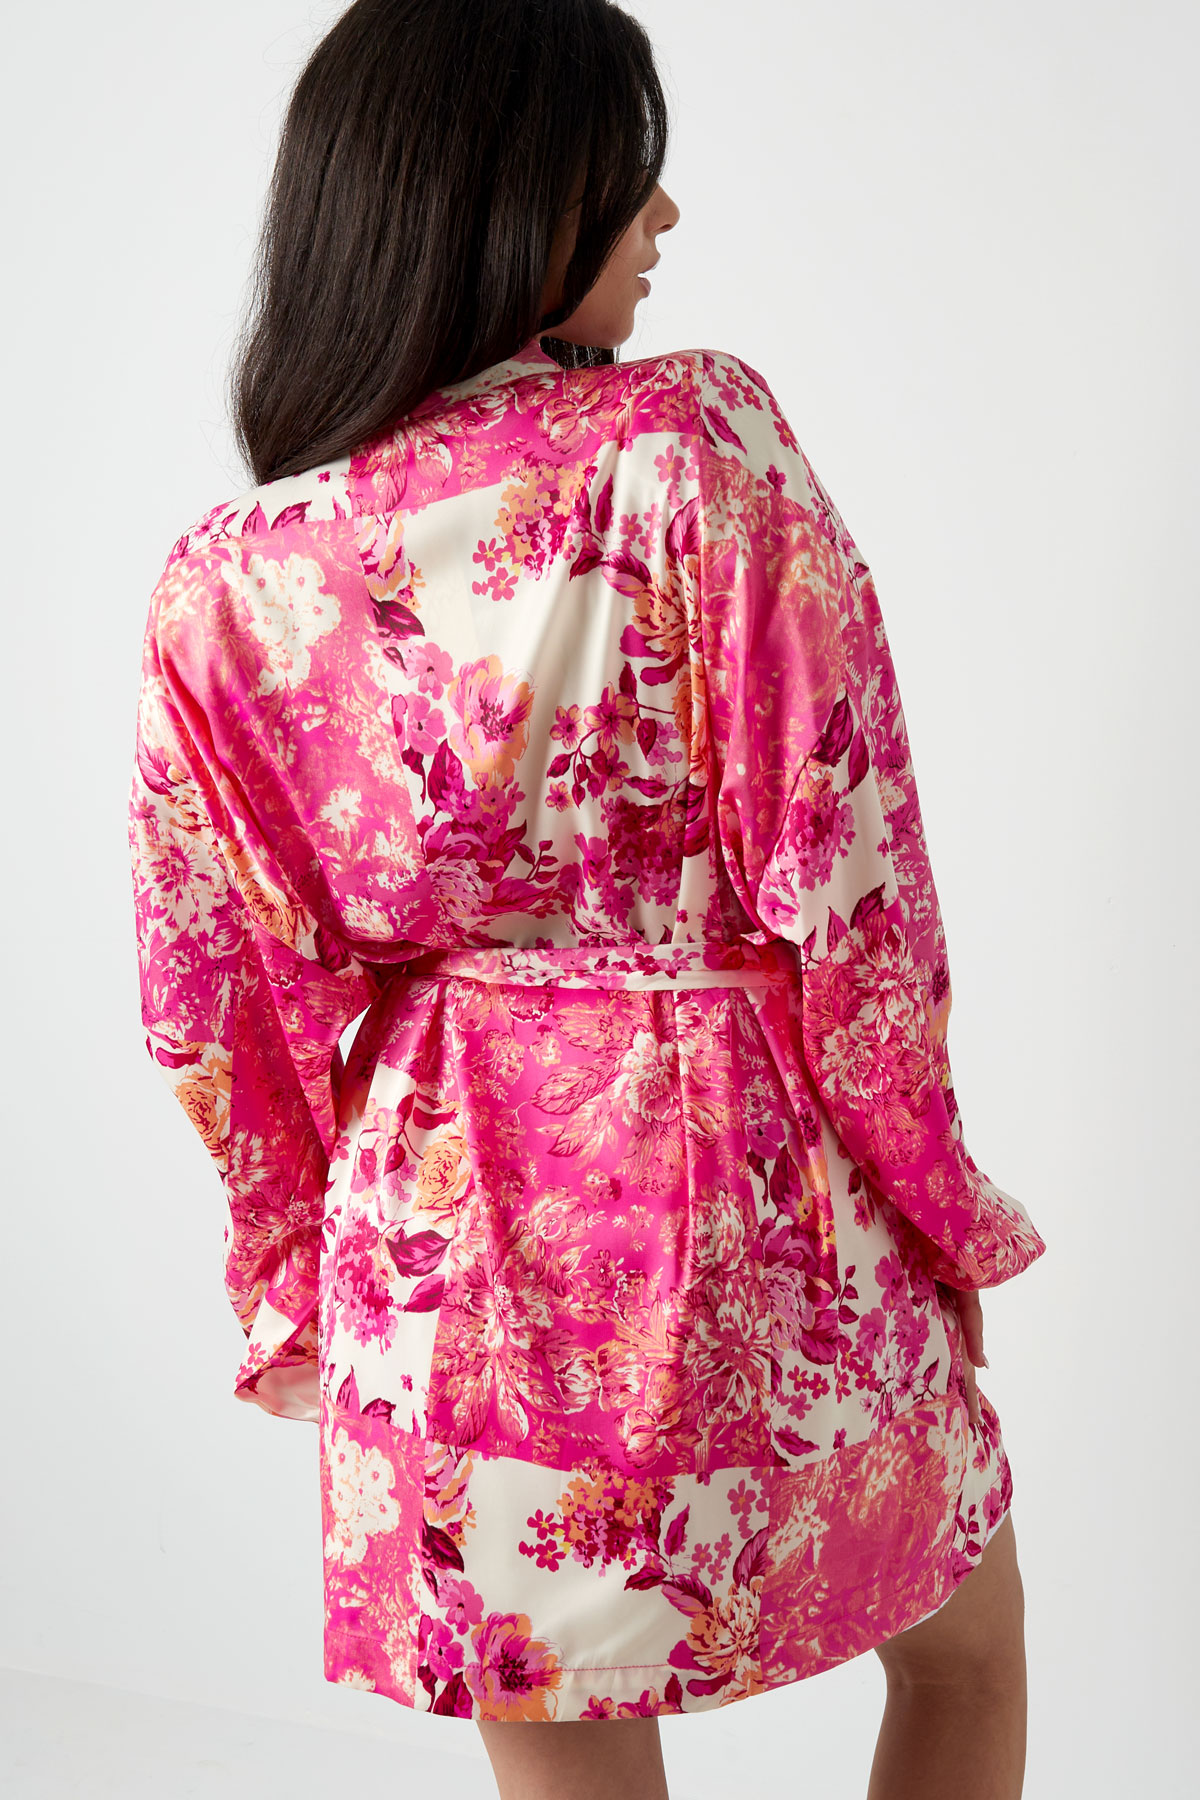 Kısa kimono yeşil çiçekler - çoklu Resim6